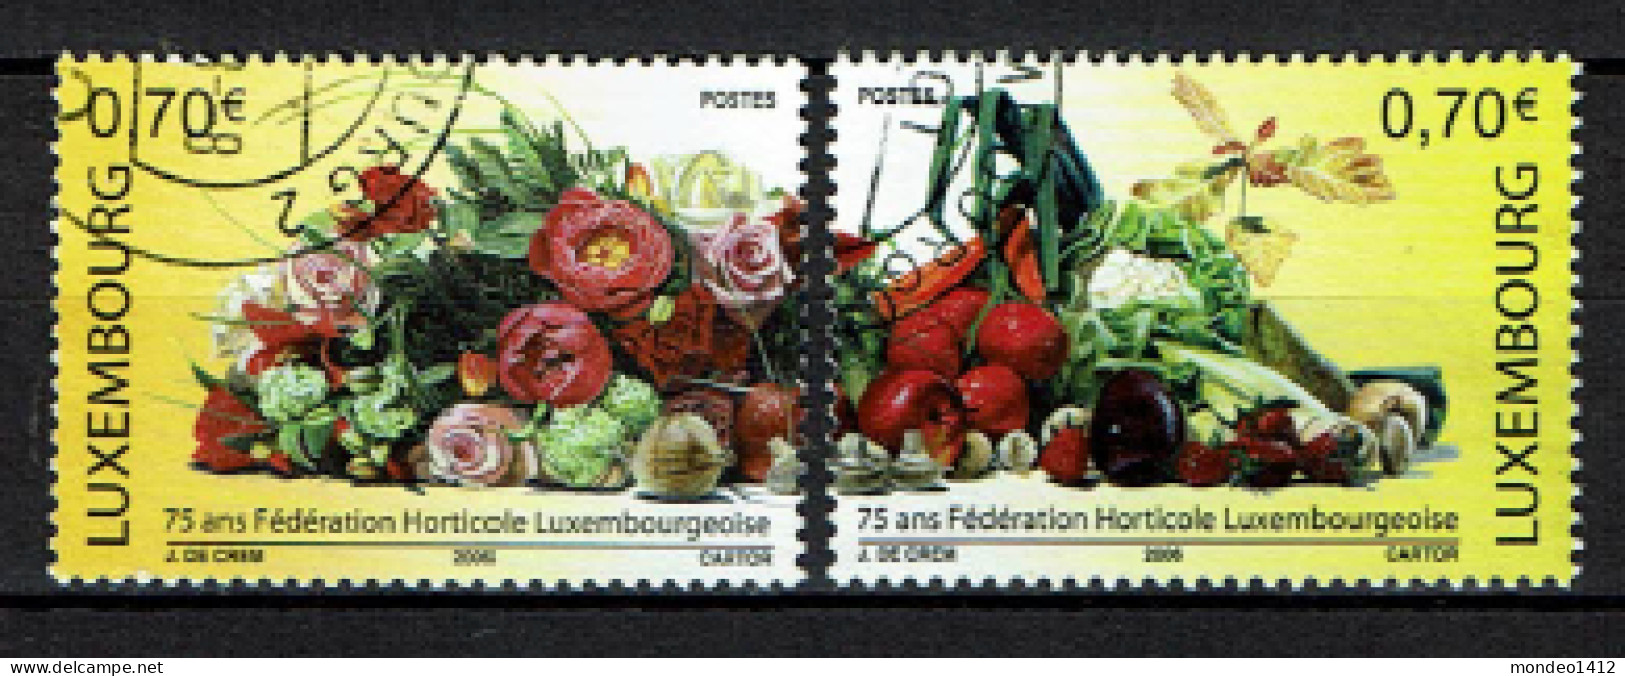 Luxembourg 2006 - YT 1678/1679 - Fleurs, Fruits Et Légumes, Flowers, Fruits And Vegetables - Oblitérés